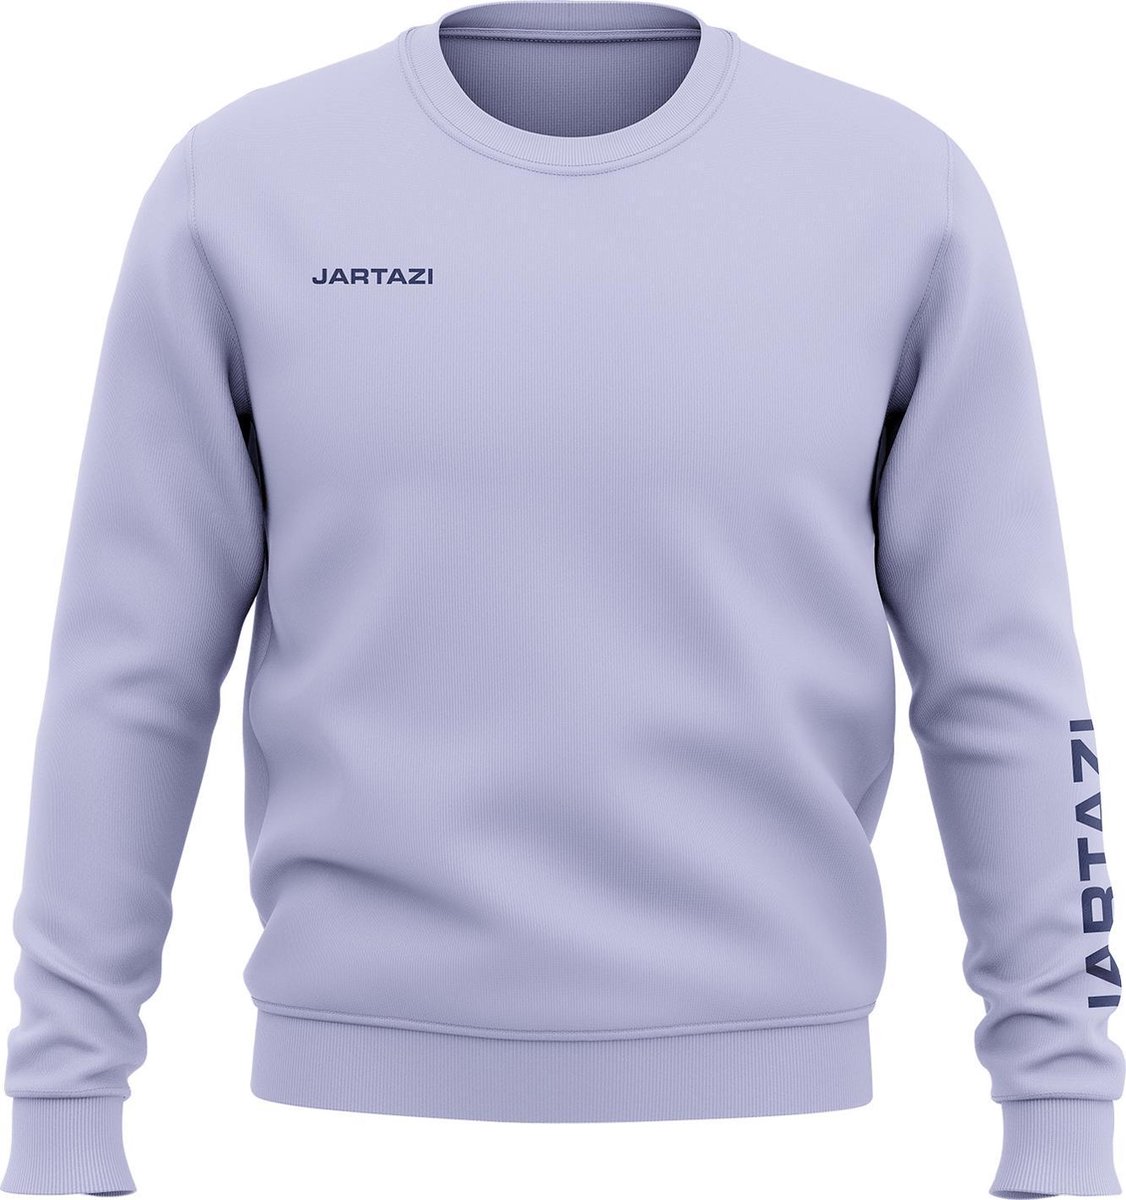 Jartazi Sweater Premium Crewneck Katoen/polyester Blauw Maat Xxl